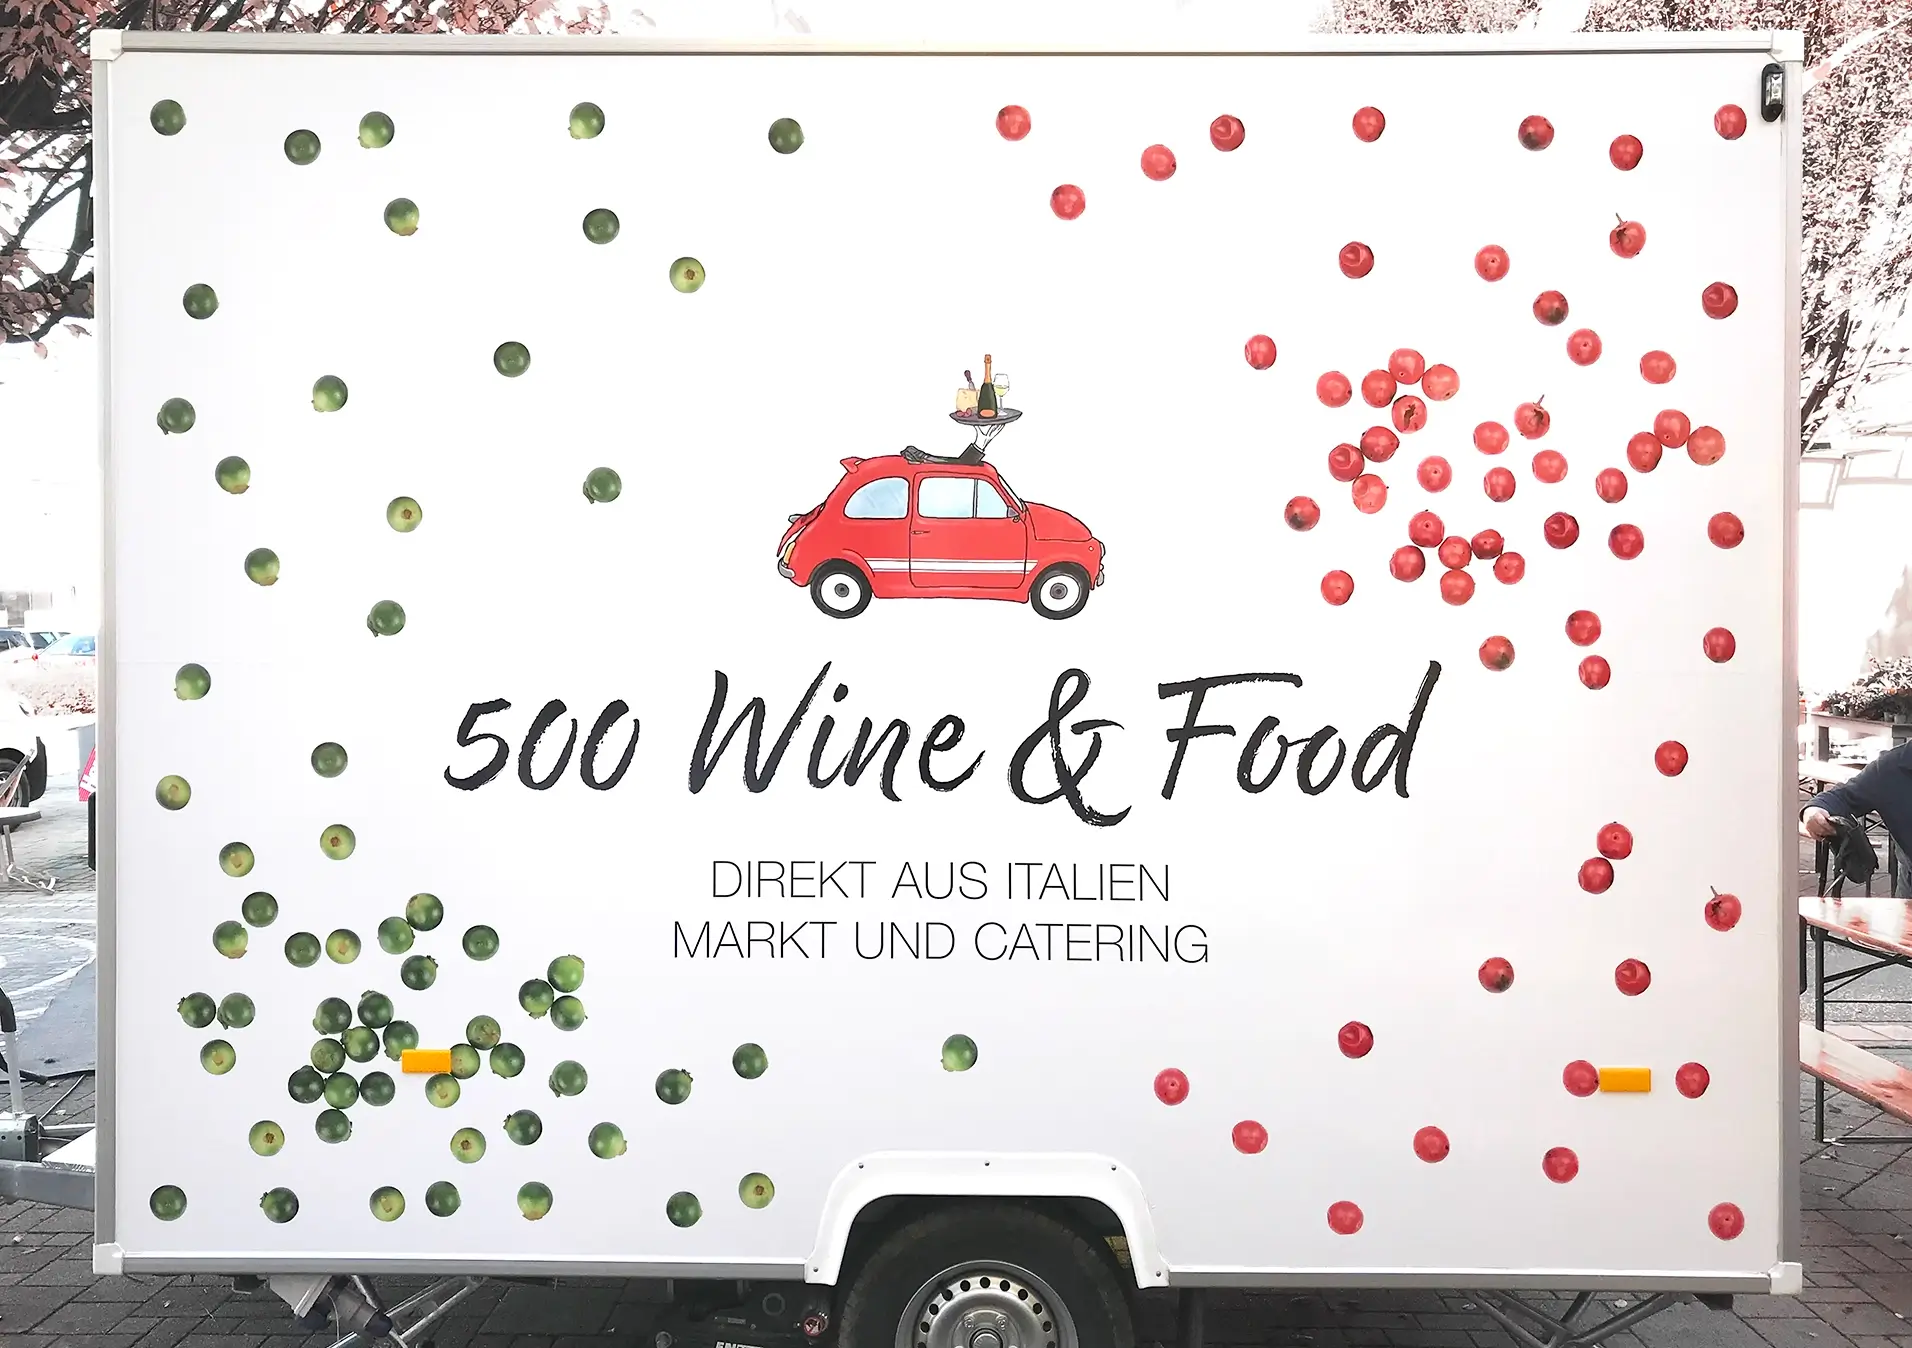 Gestaltung Marktwagen 500 Wine & Food